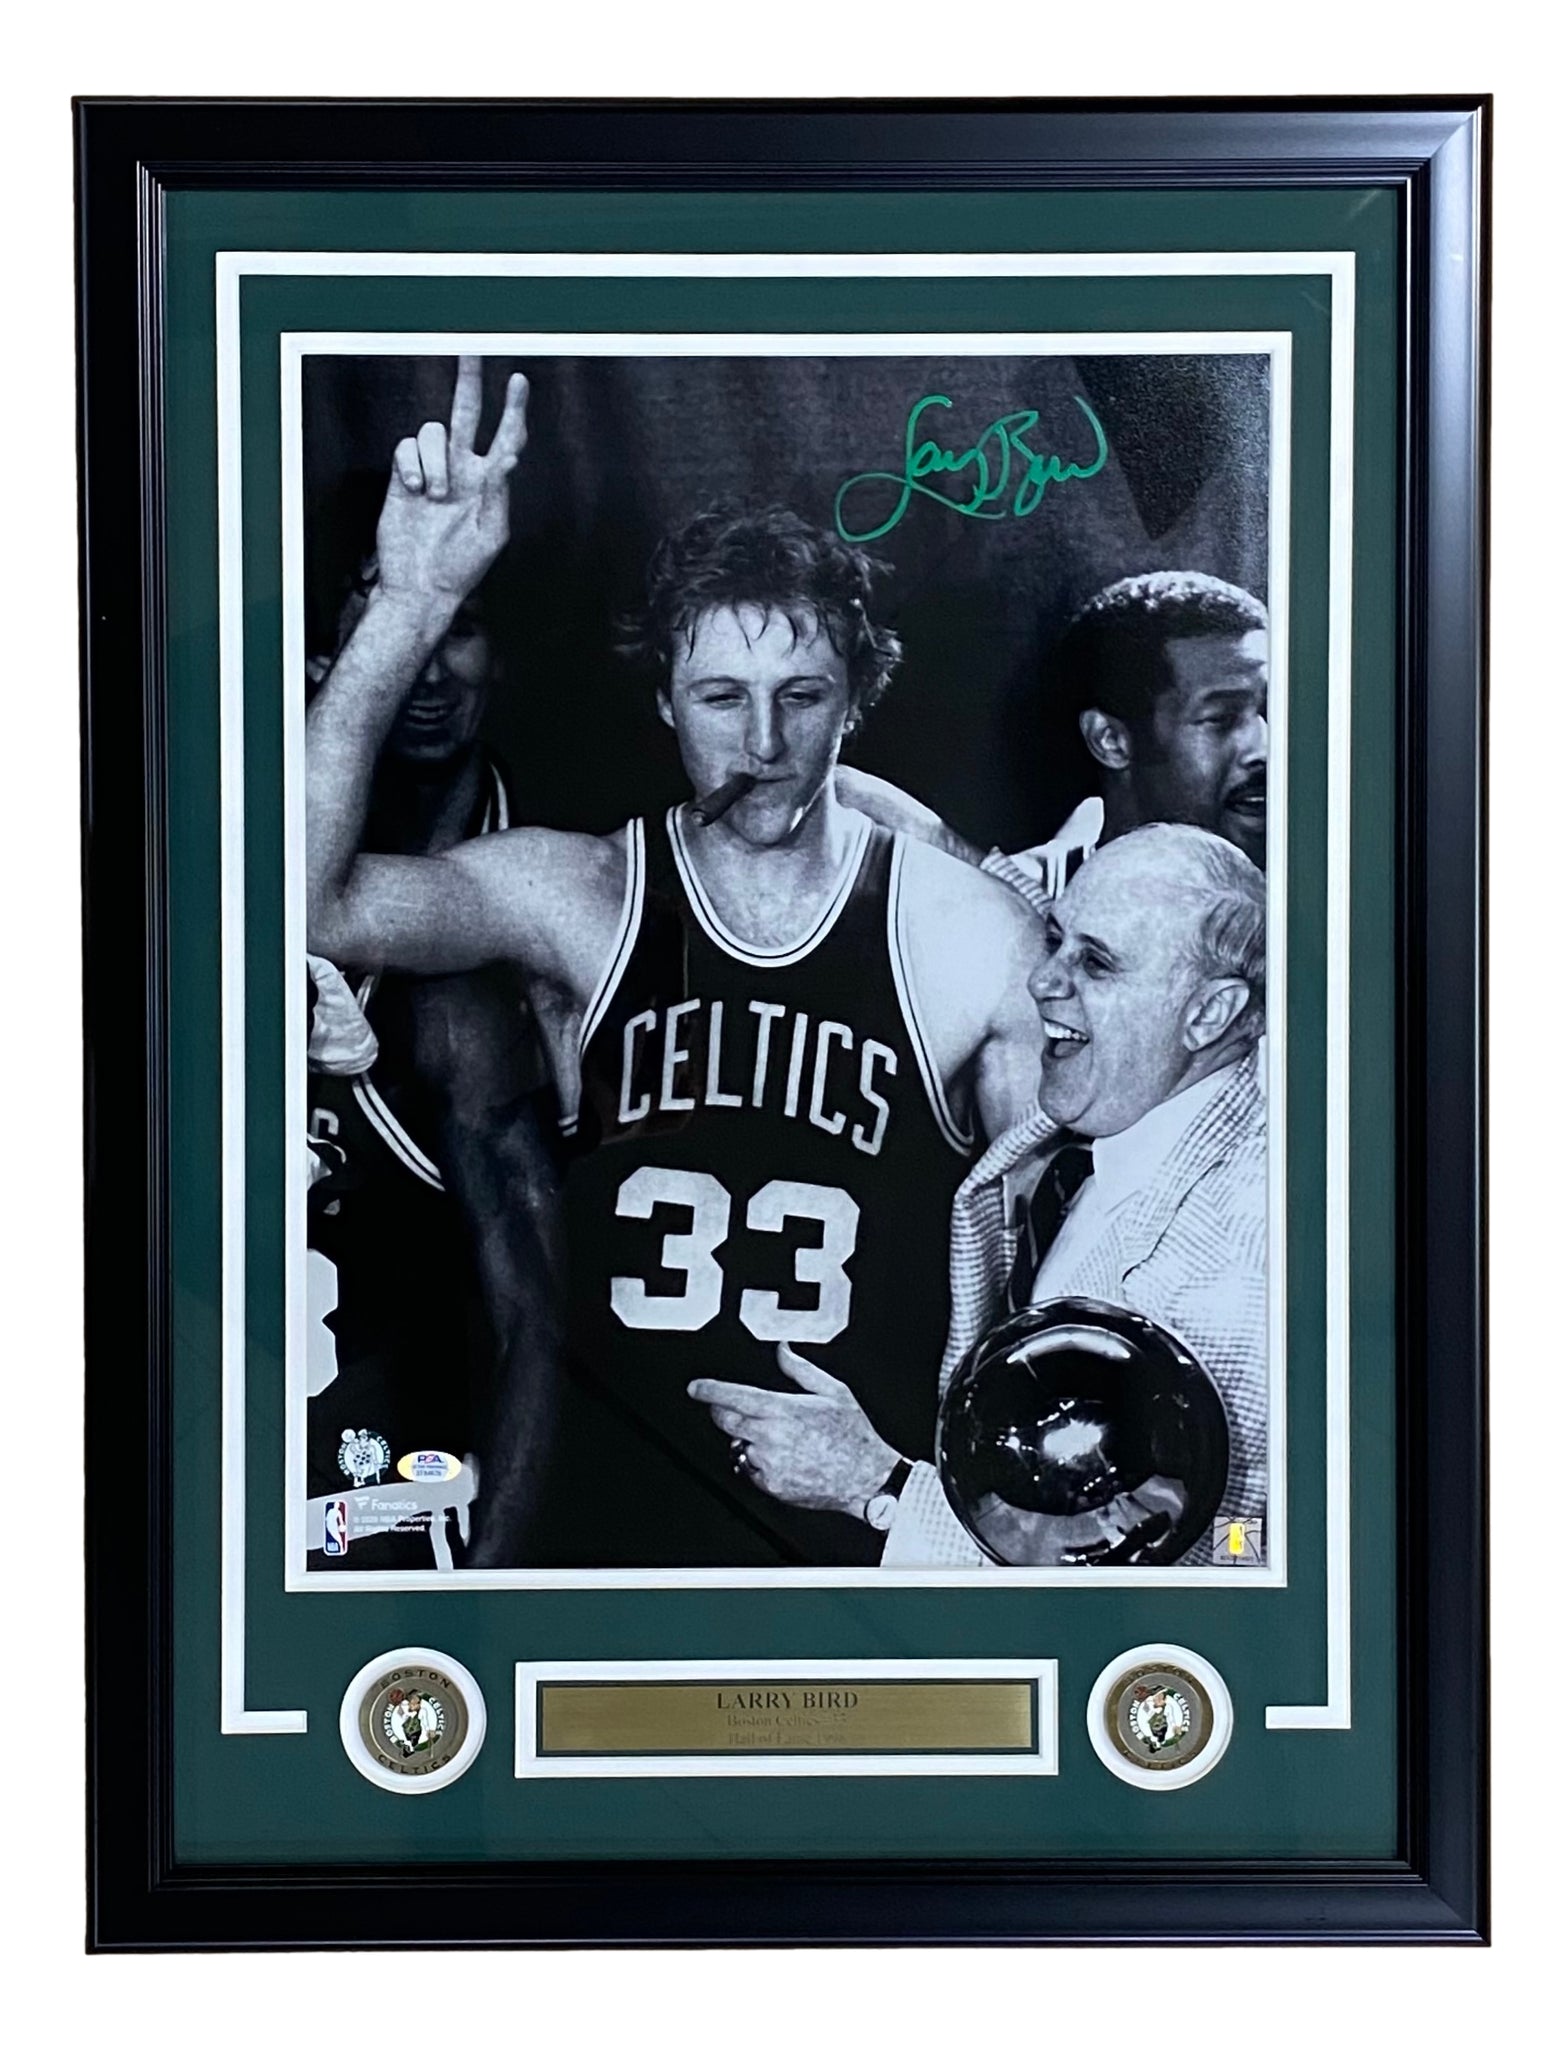 Framed Larry Bird Boston Boston Celtics Hoops Series of Images